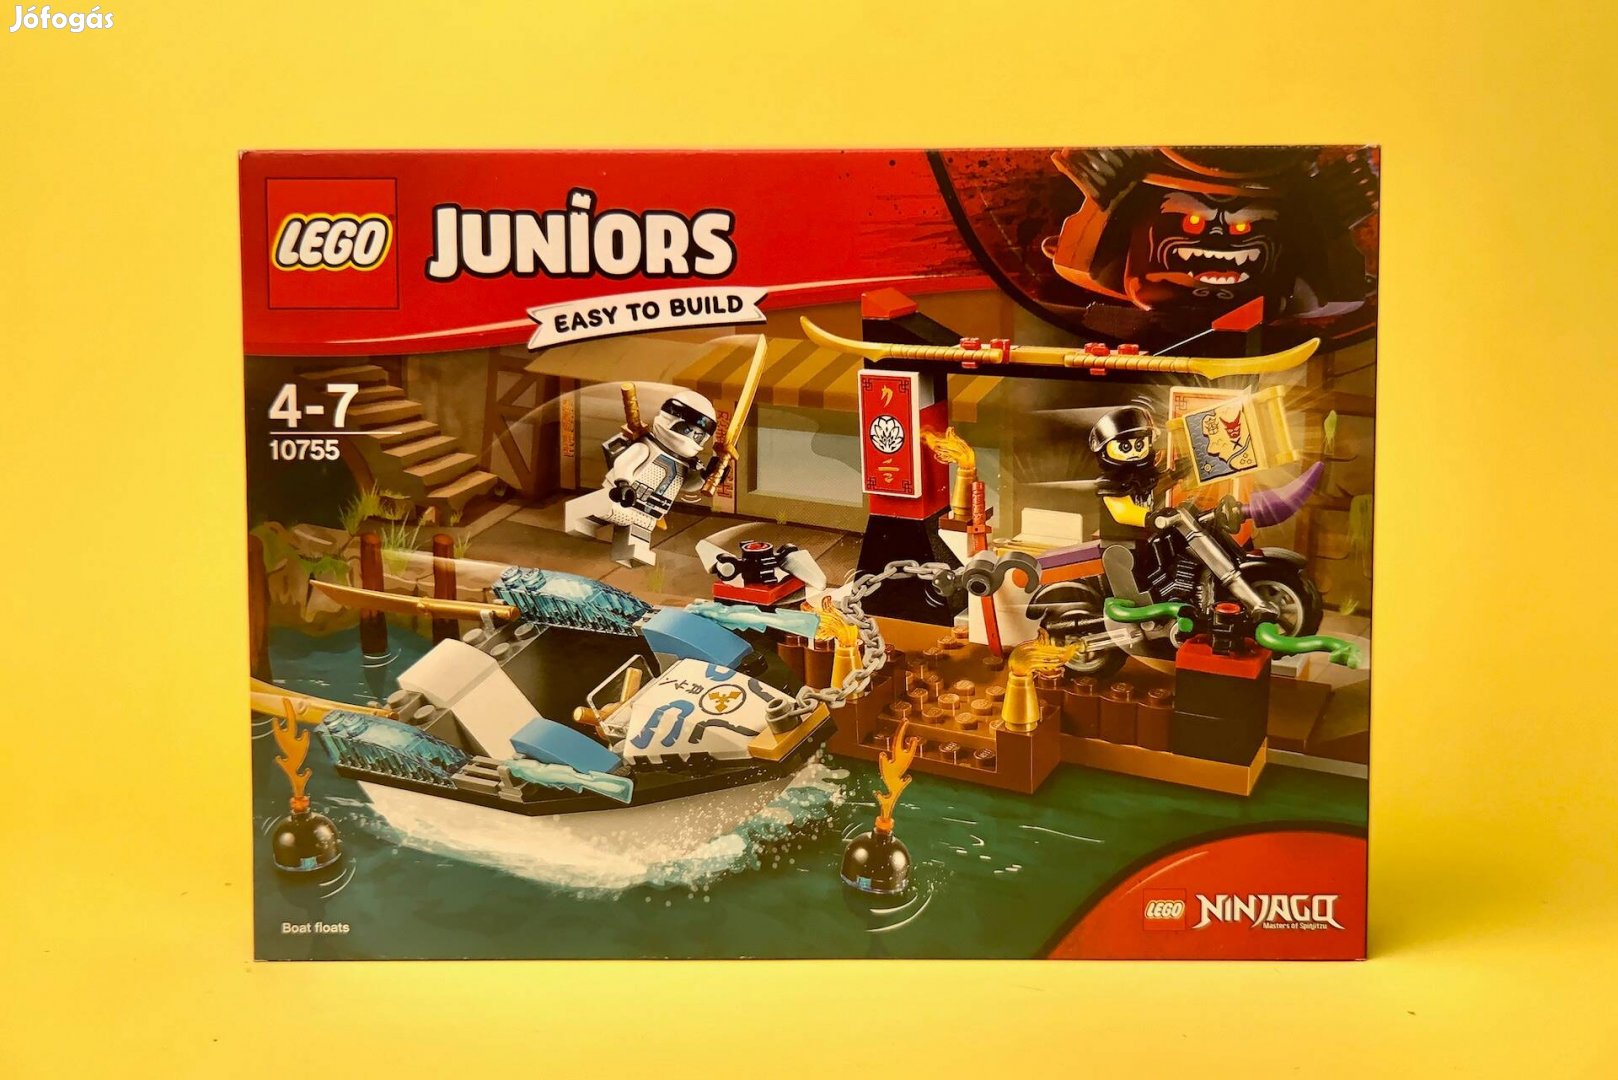 LEGO Ninjago 10755 Zane's Ninja Boat Pursuit, Uj, Bontatlan